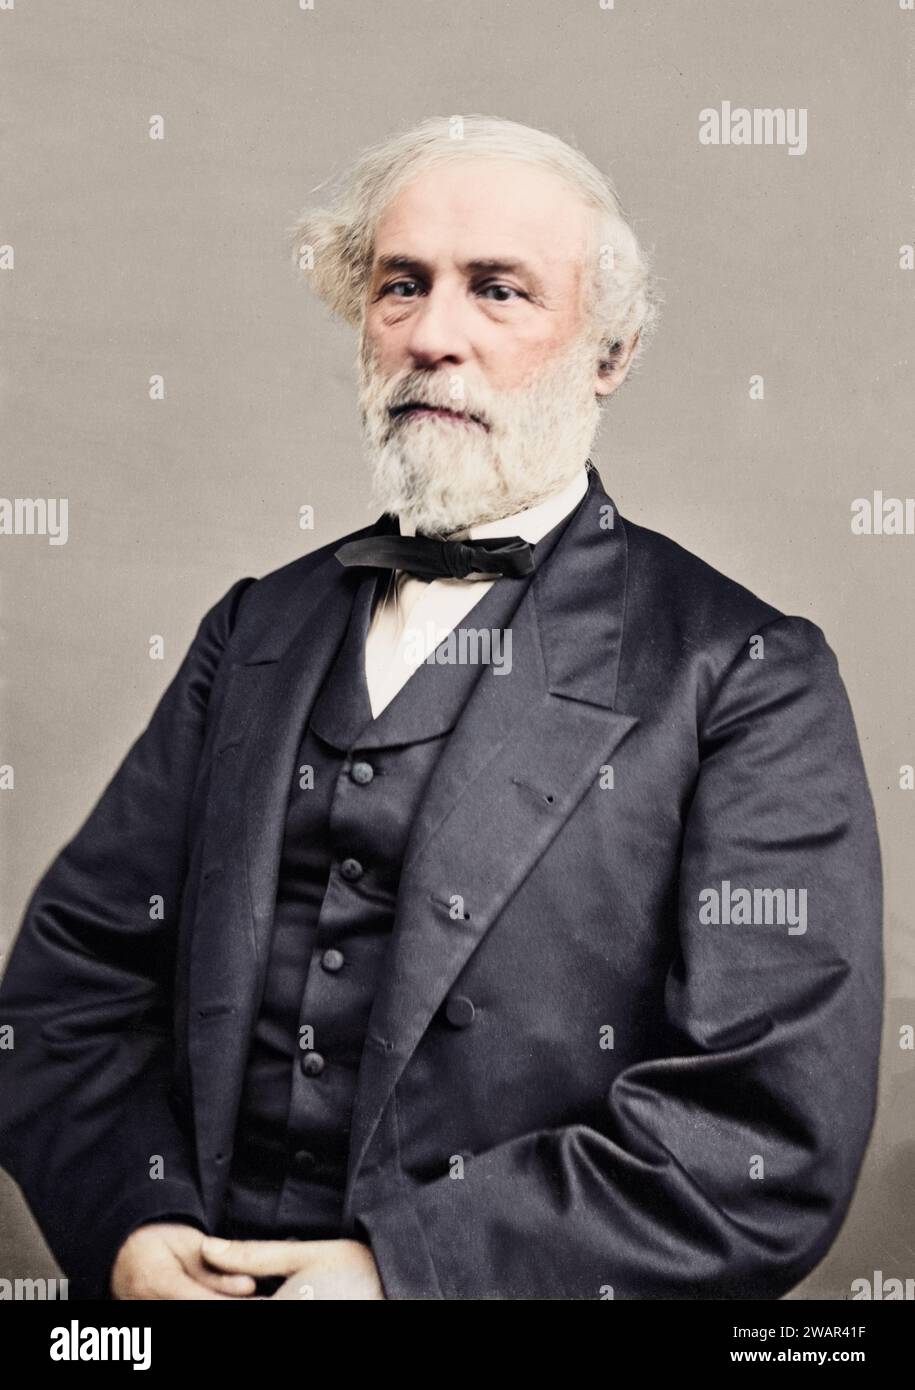 Porträt von General Robert E. Lee, Offizier der konföderierten Armee. Zwischen 1860 Und 1870. Stockfoto